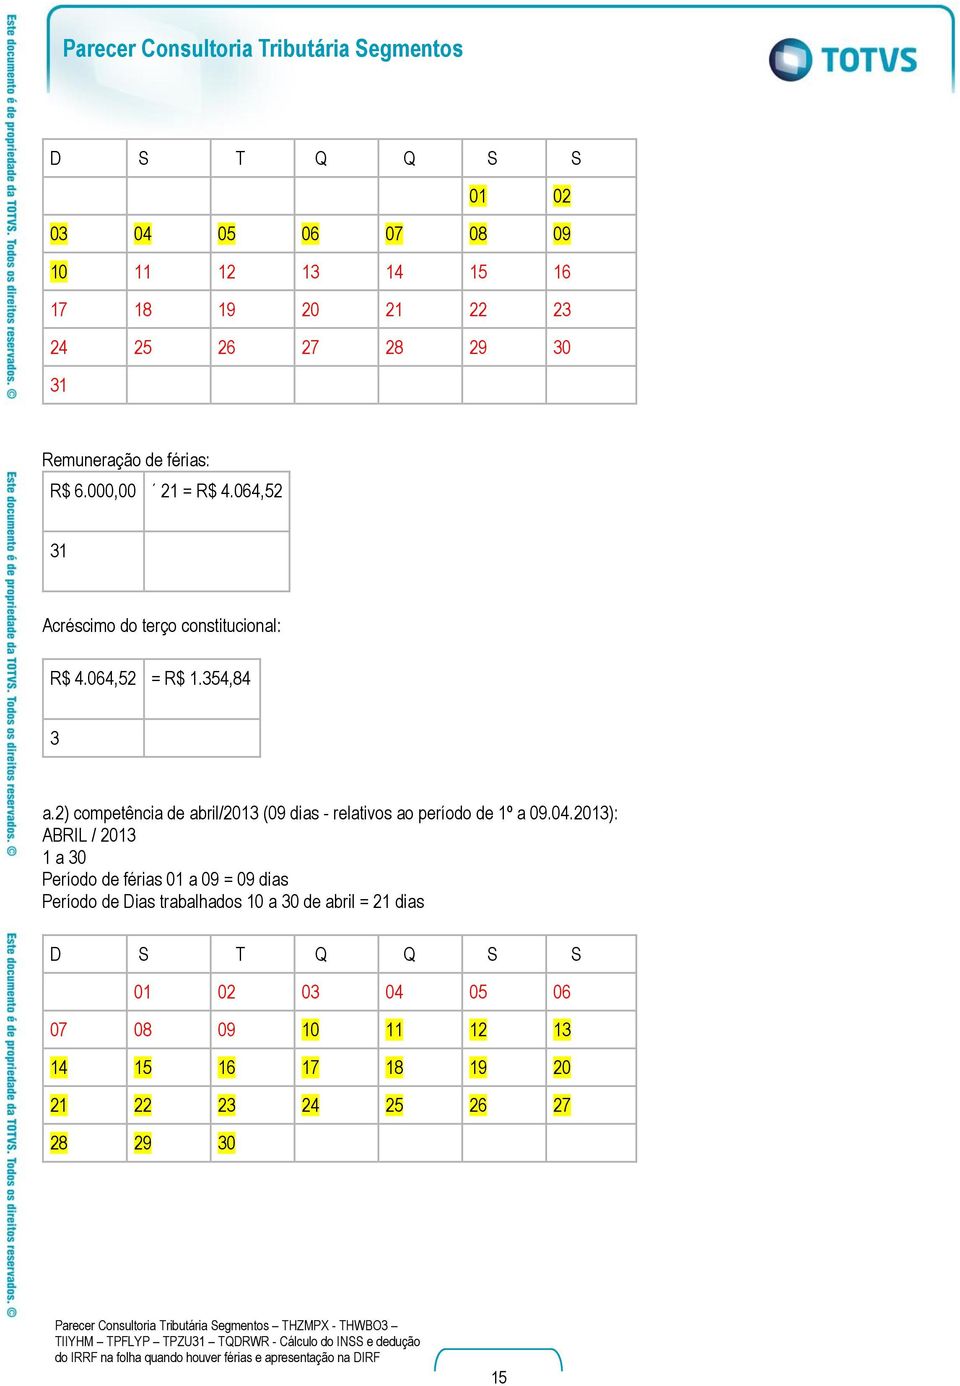 2) competência de abril/2013 (09 dias - relativos ao período de 1º a 09.04.